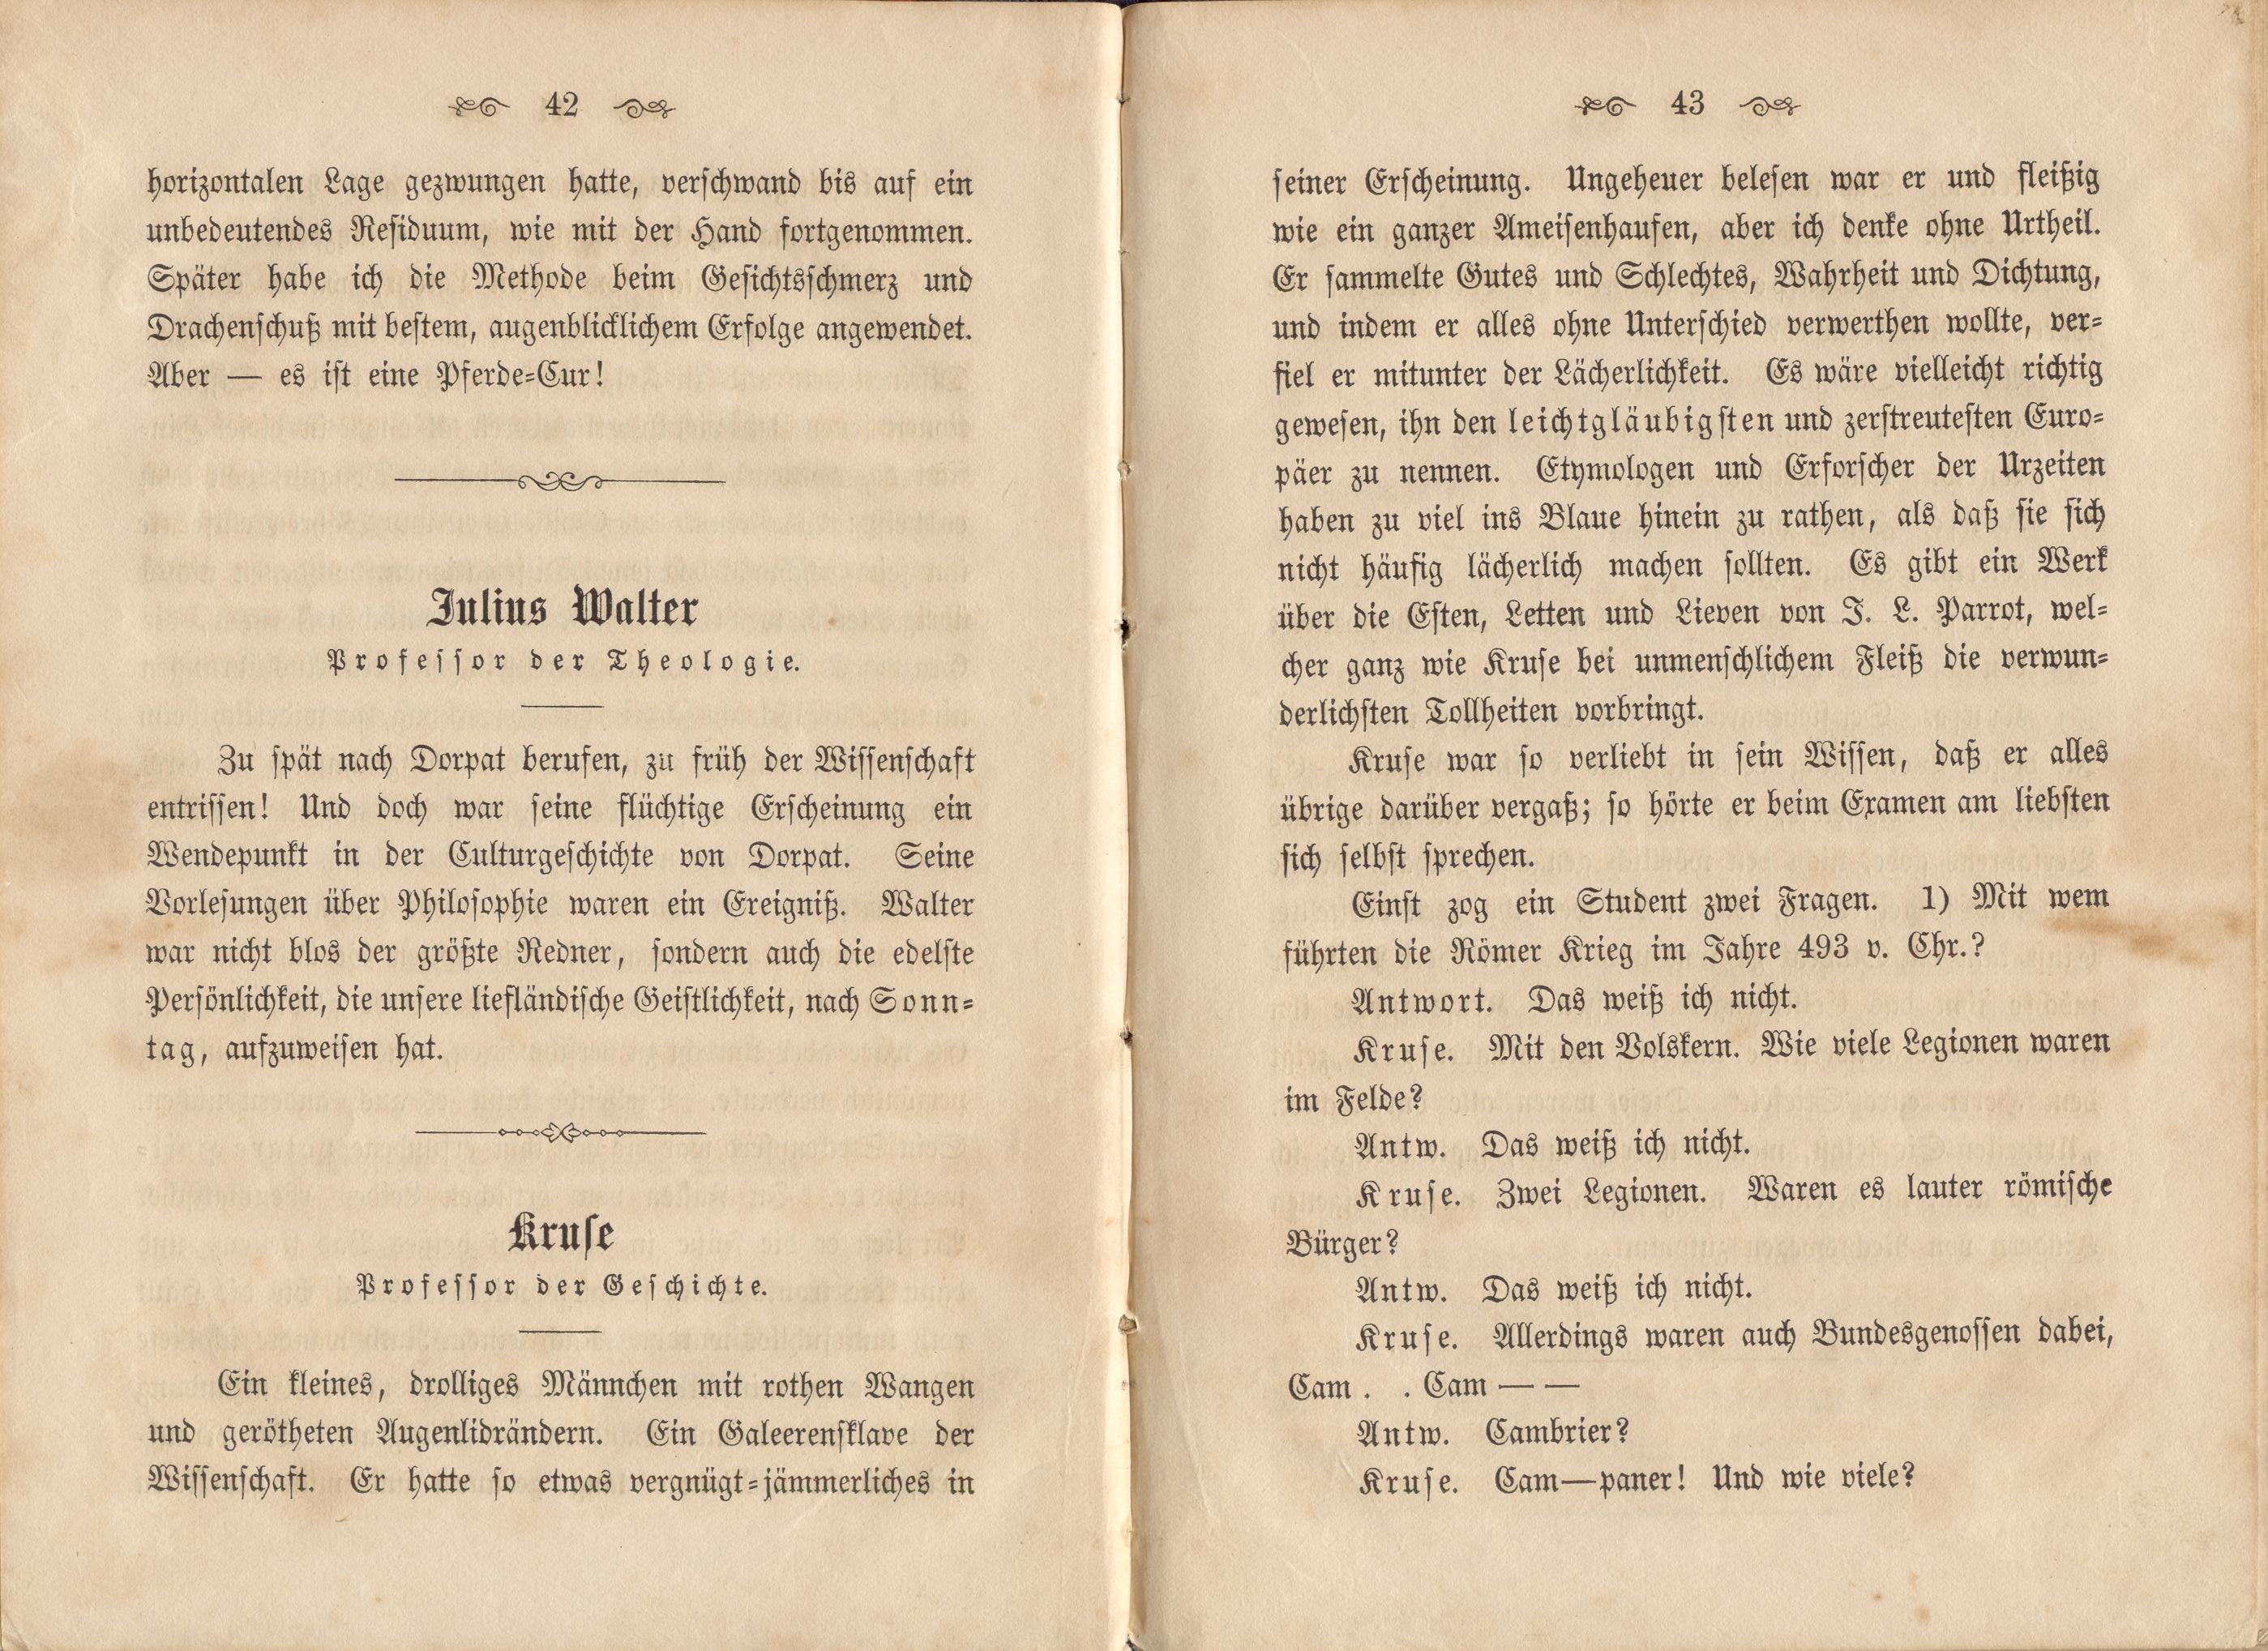 Dorpats Grössen und Typen (1868) | 24. (42-43) Main body of text